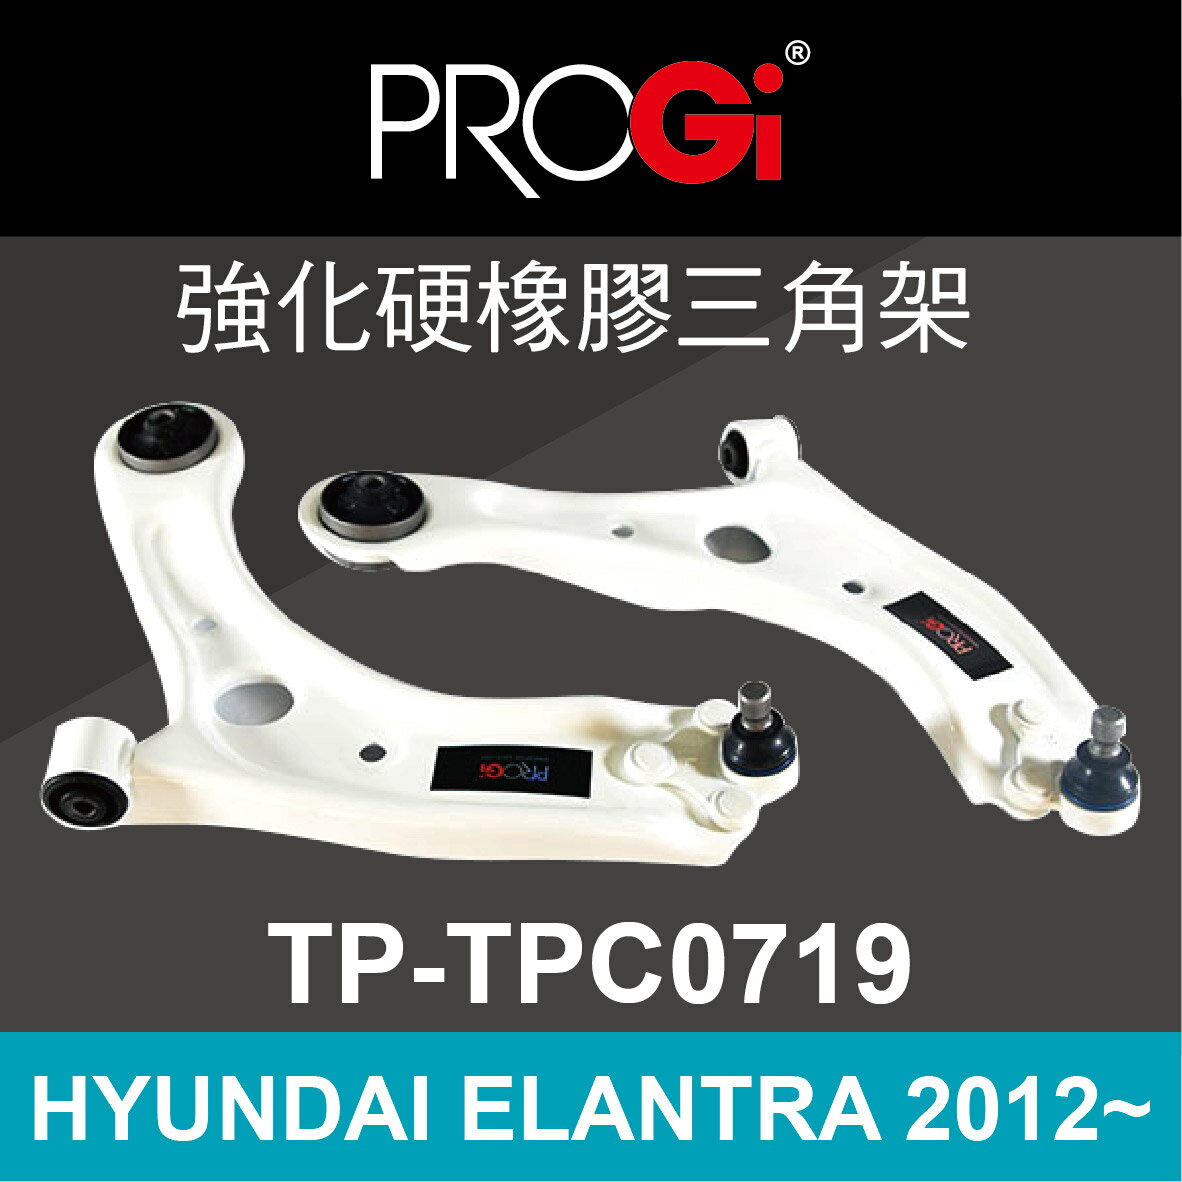 真便宜 [預購]PROGi TP-TPC0719 強化硬橡膠三角架(HYUNDAI ELANTRA 2012~)